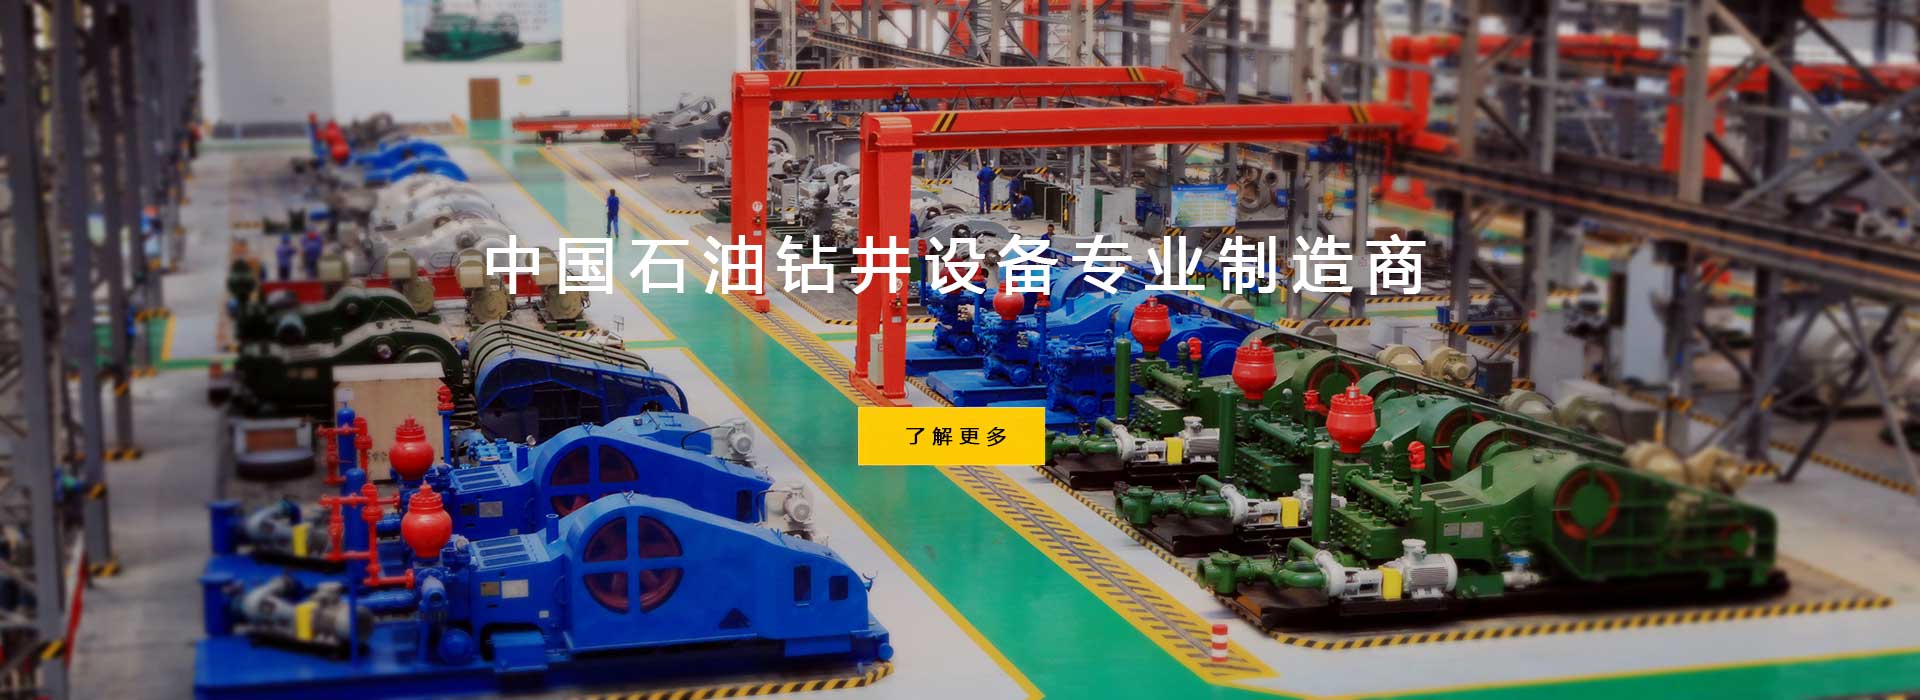 中国石油钻井设备专业制造商。